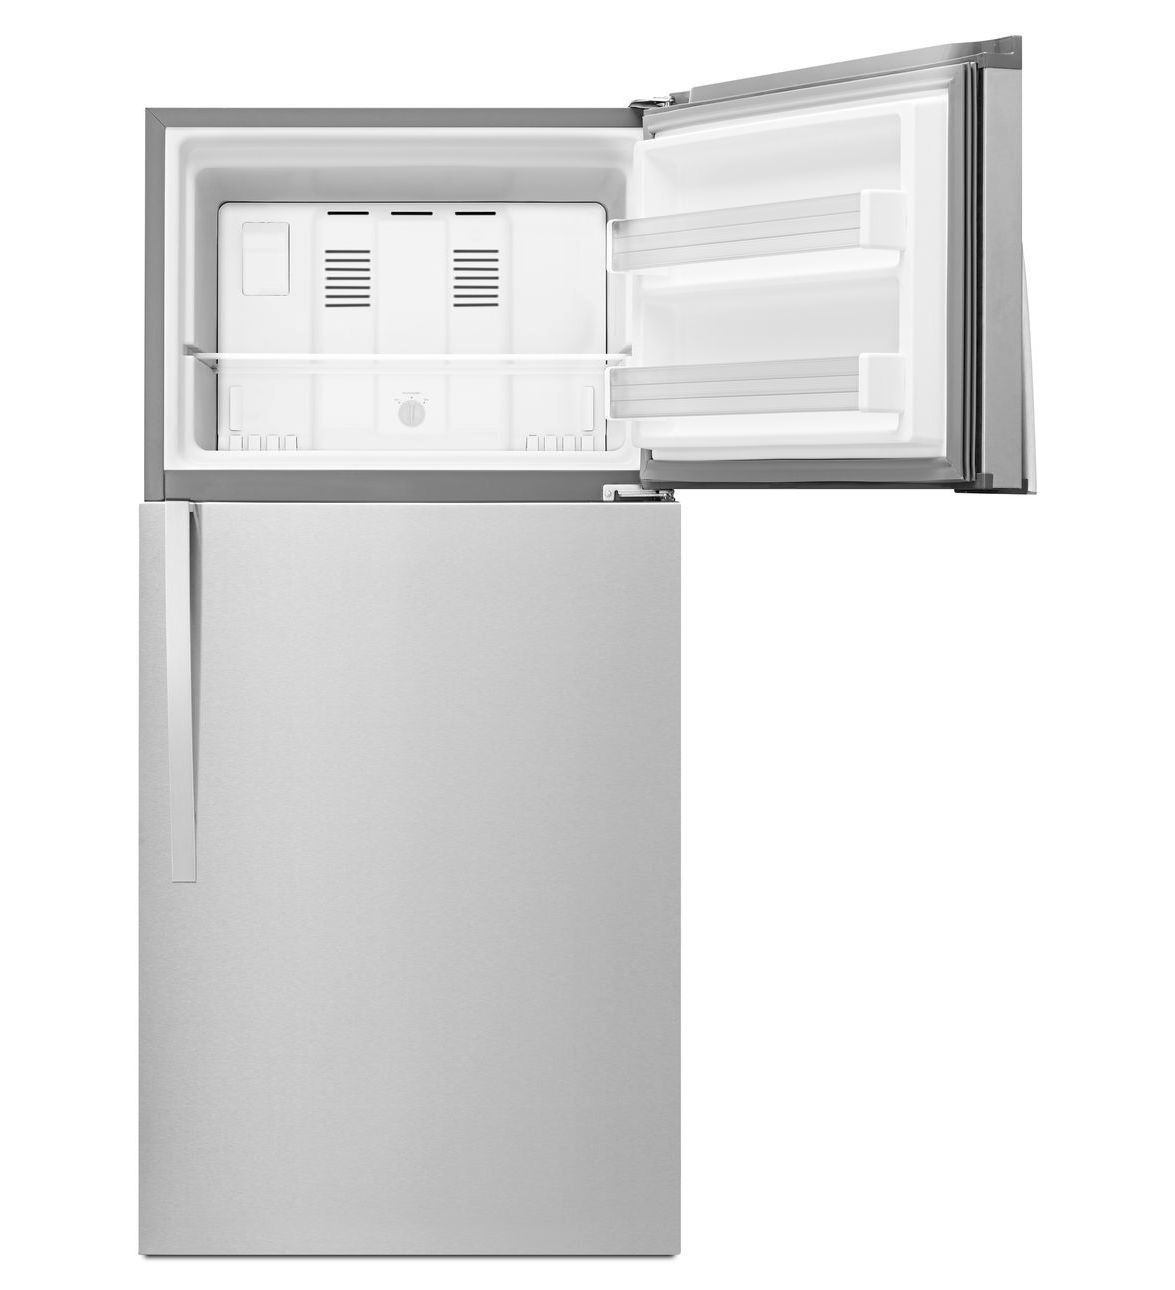 Все современные холодильники оснащены морозильной камерой